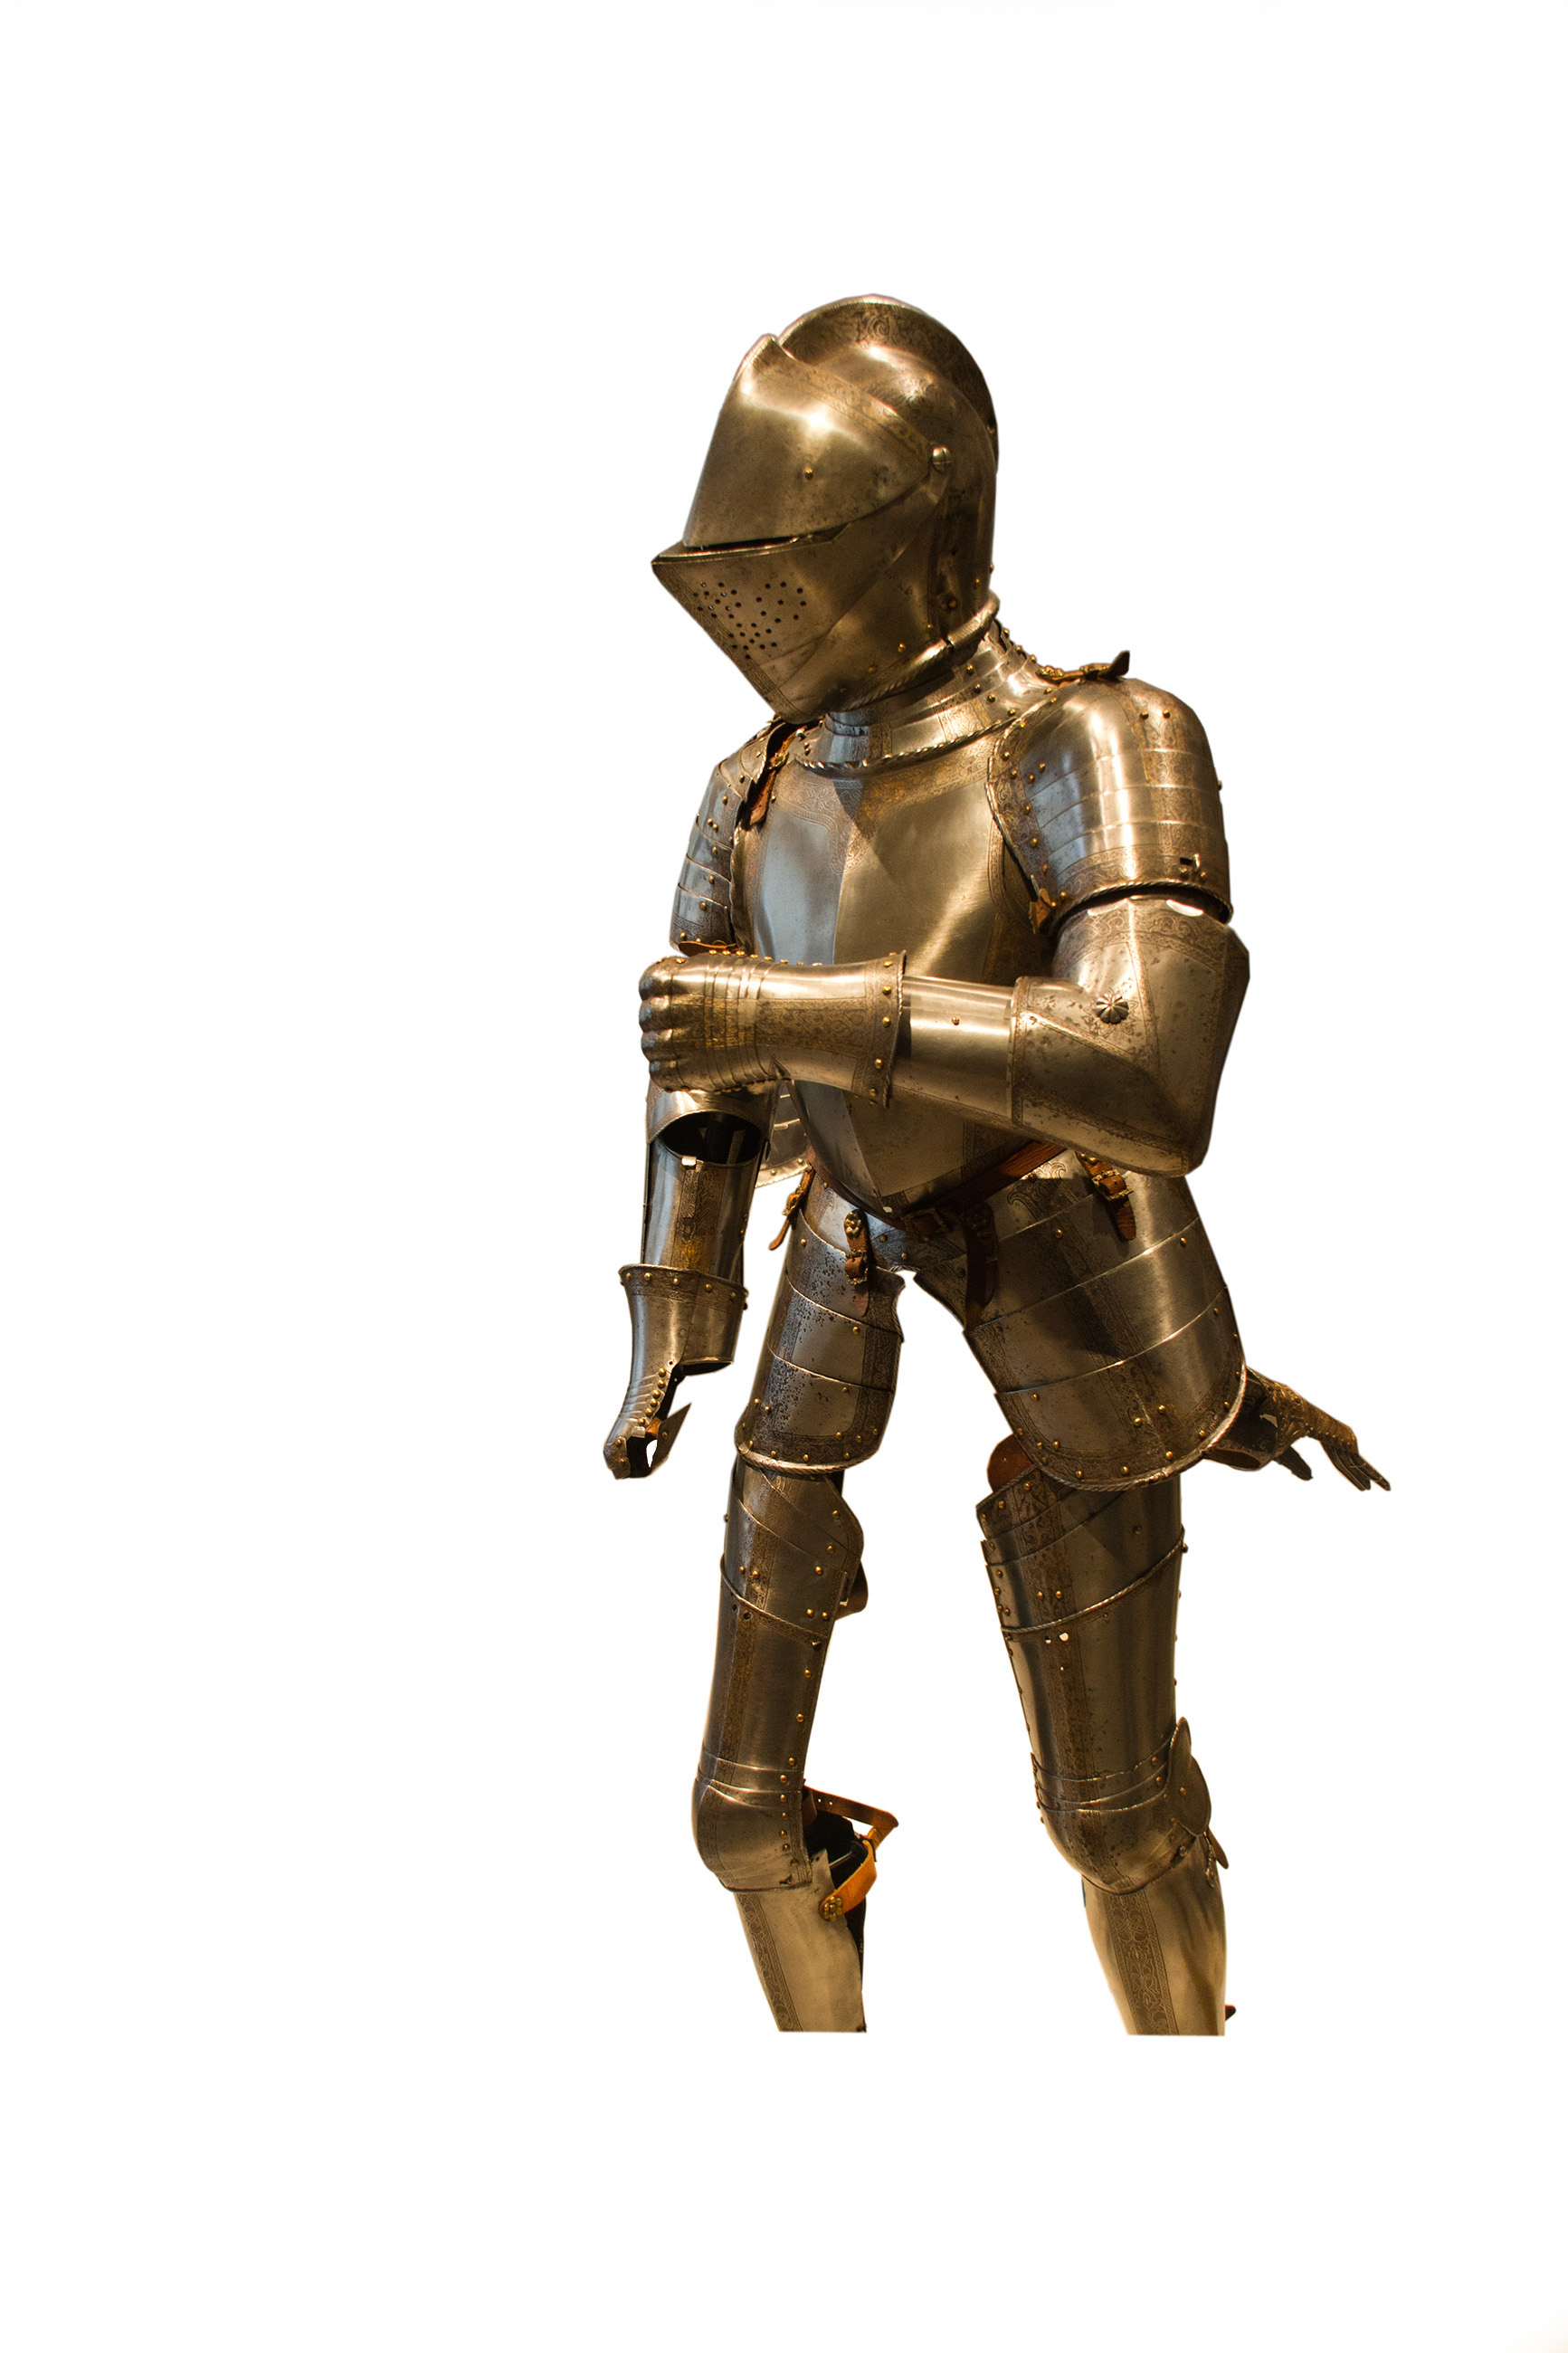 Armour Knight, Ancient, Metallic, Warfare, War, HQ Photo